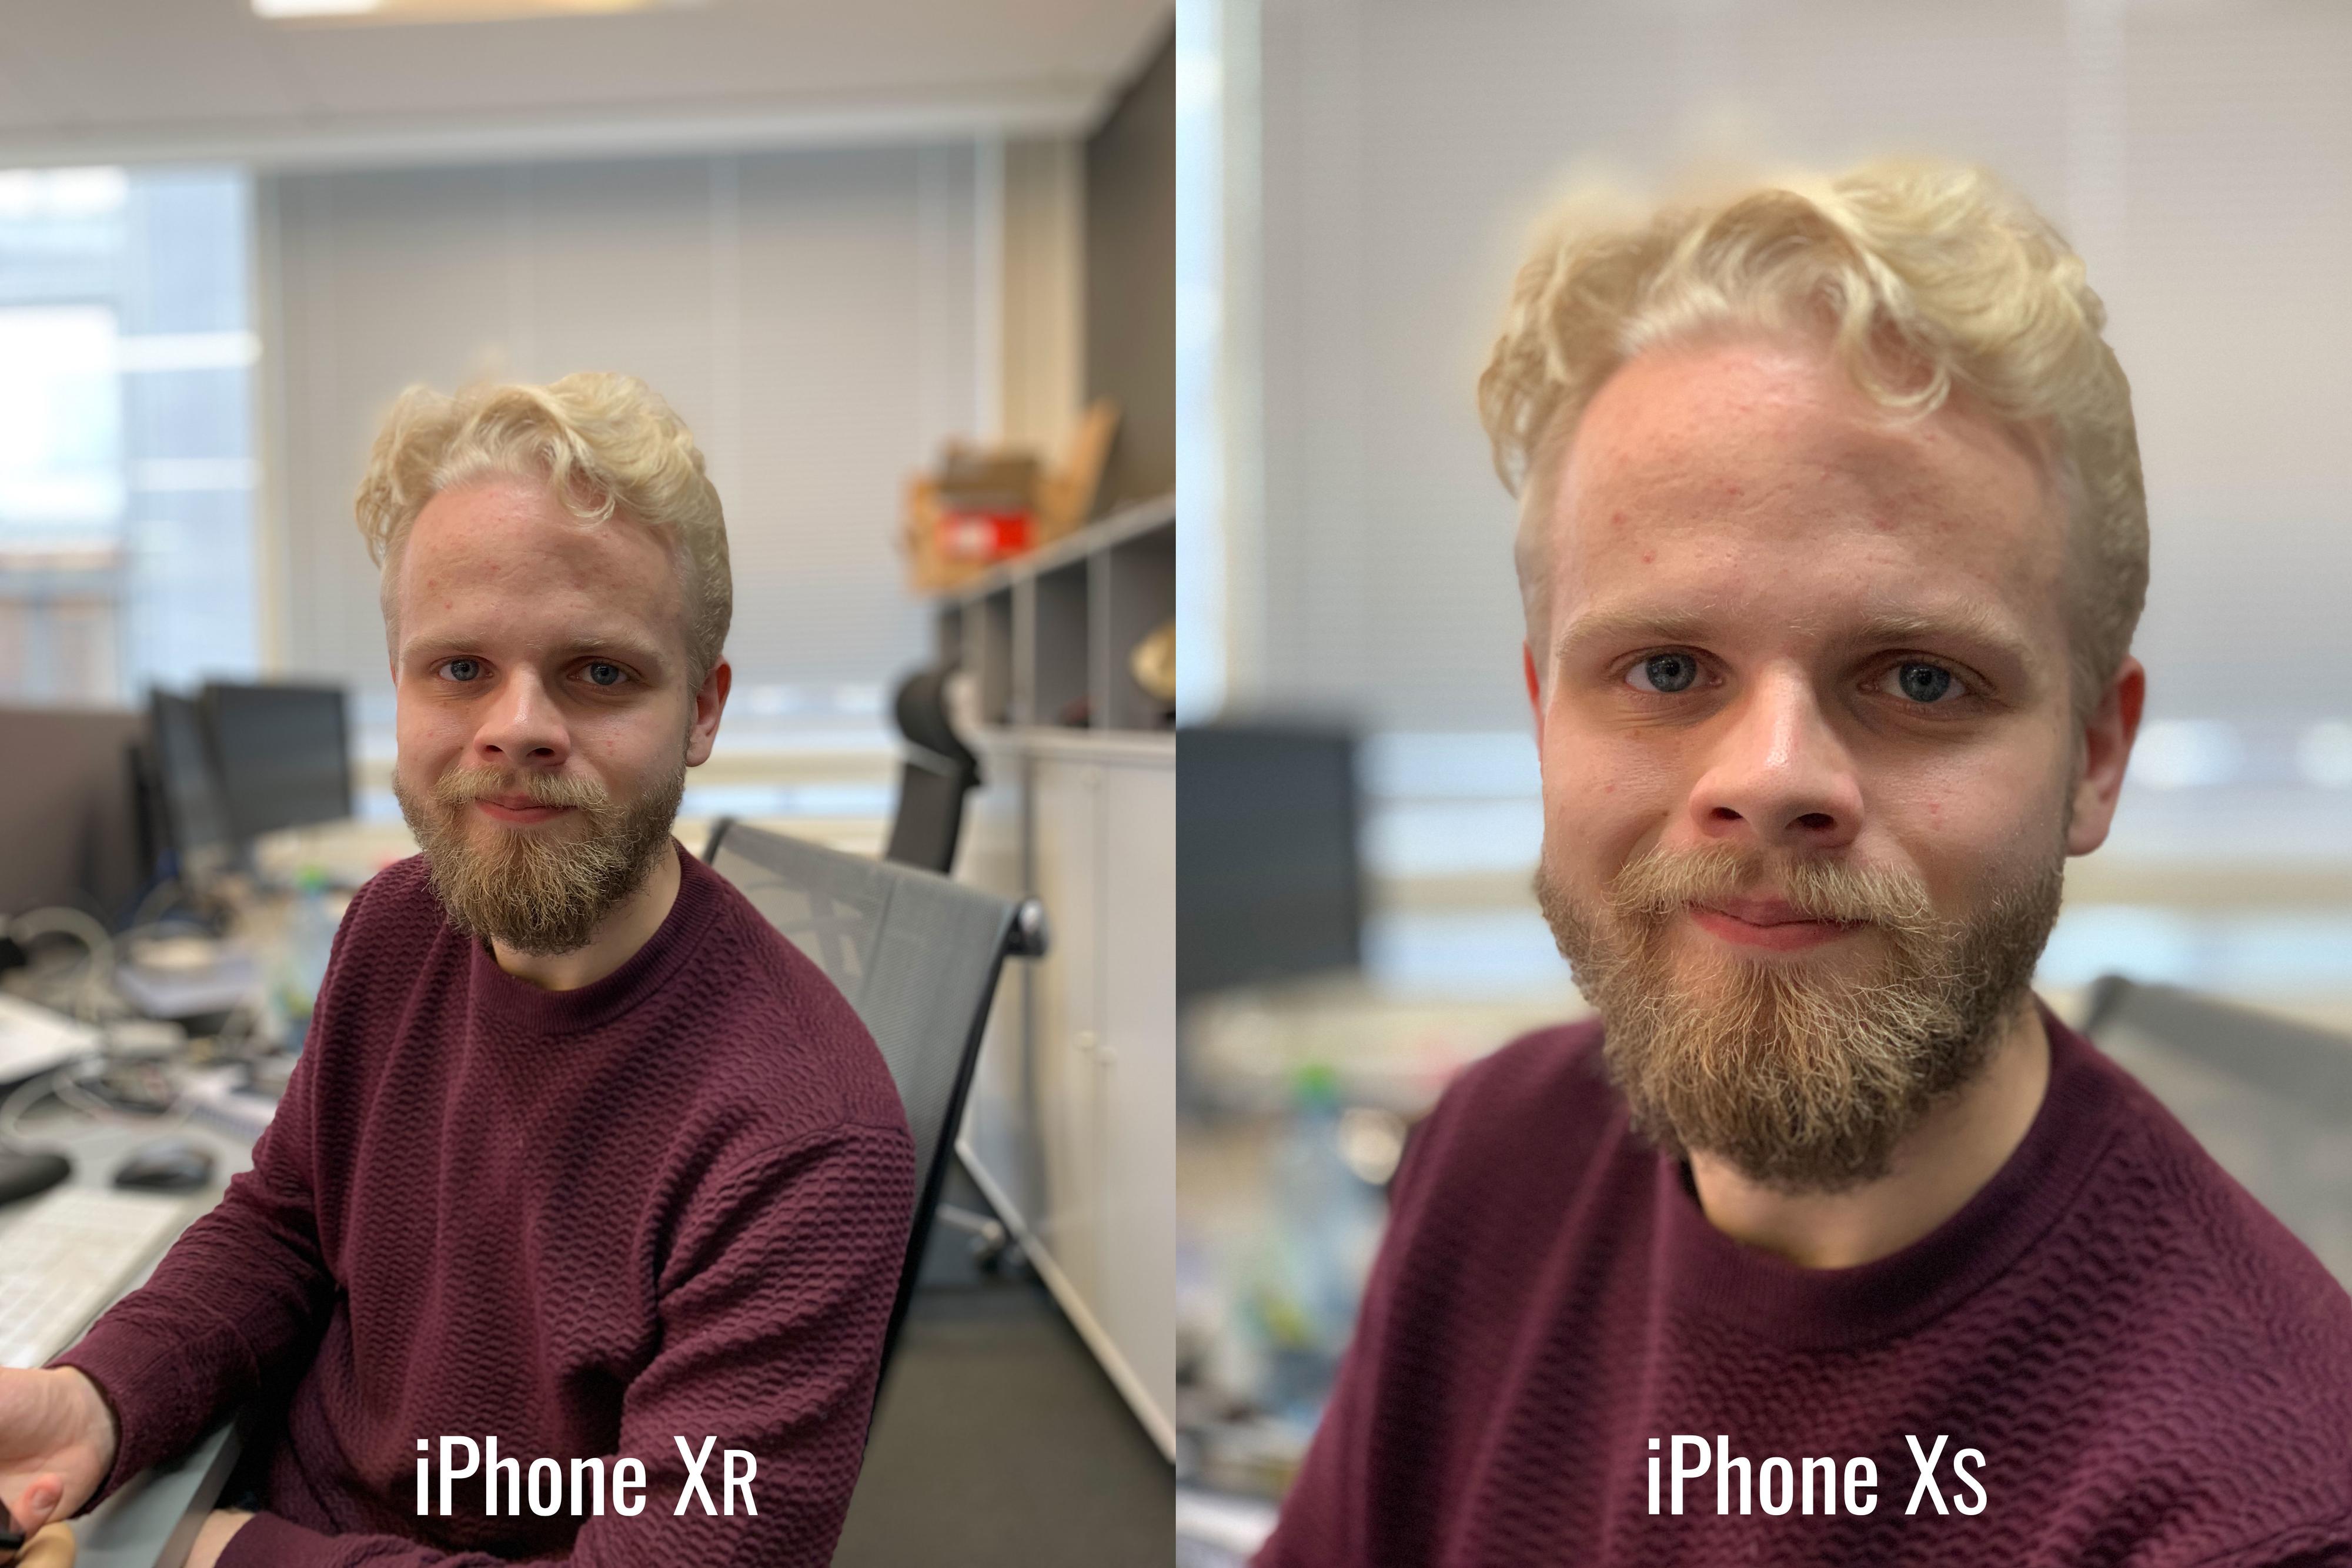 Til tross for at iPhone Xr bare har ett kamera på baksiden, klarer den å separere ansikt godt fra bakgrunnen. Sjekk håret på toppen, så ser det faktisk ut som at Xr gjør enn bedre jobb enn iPhone Xs.